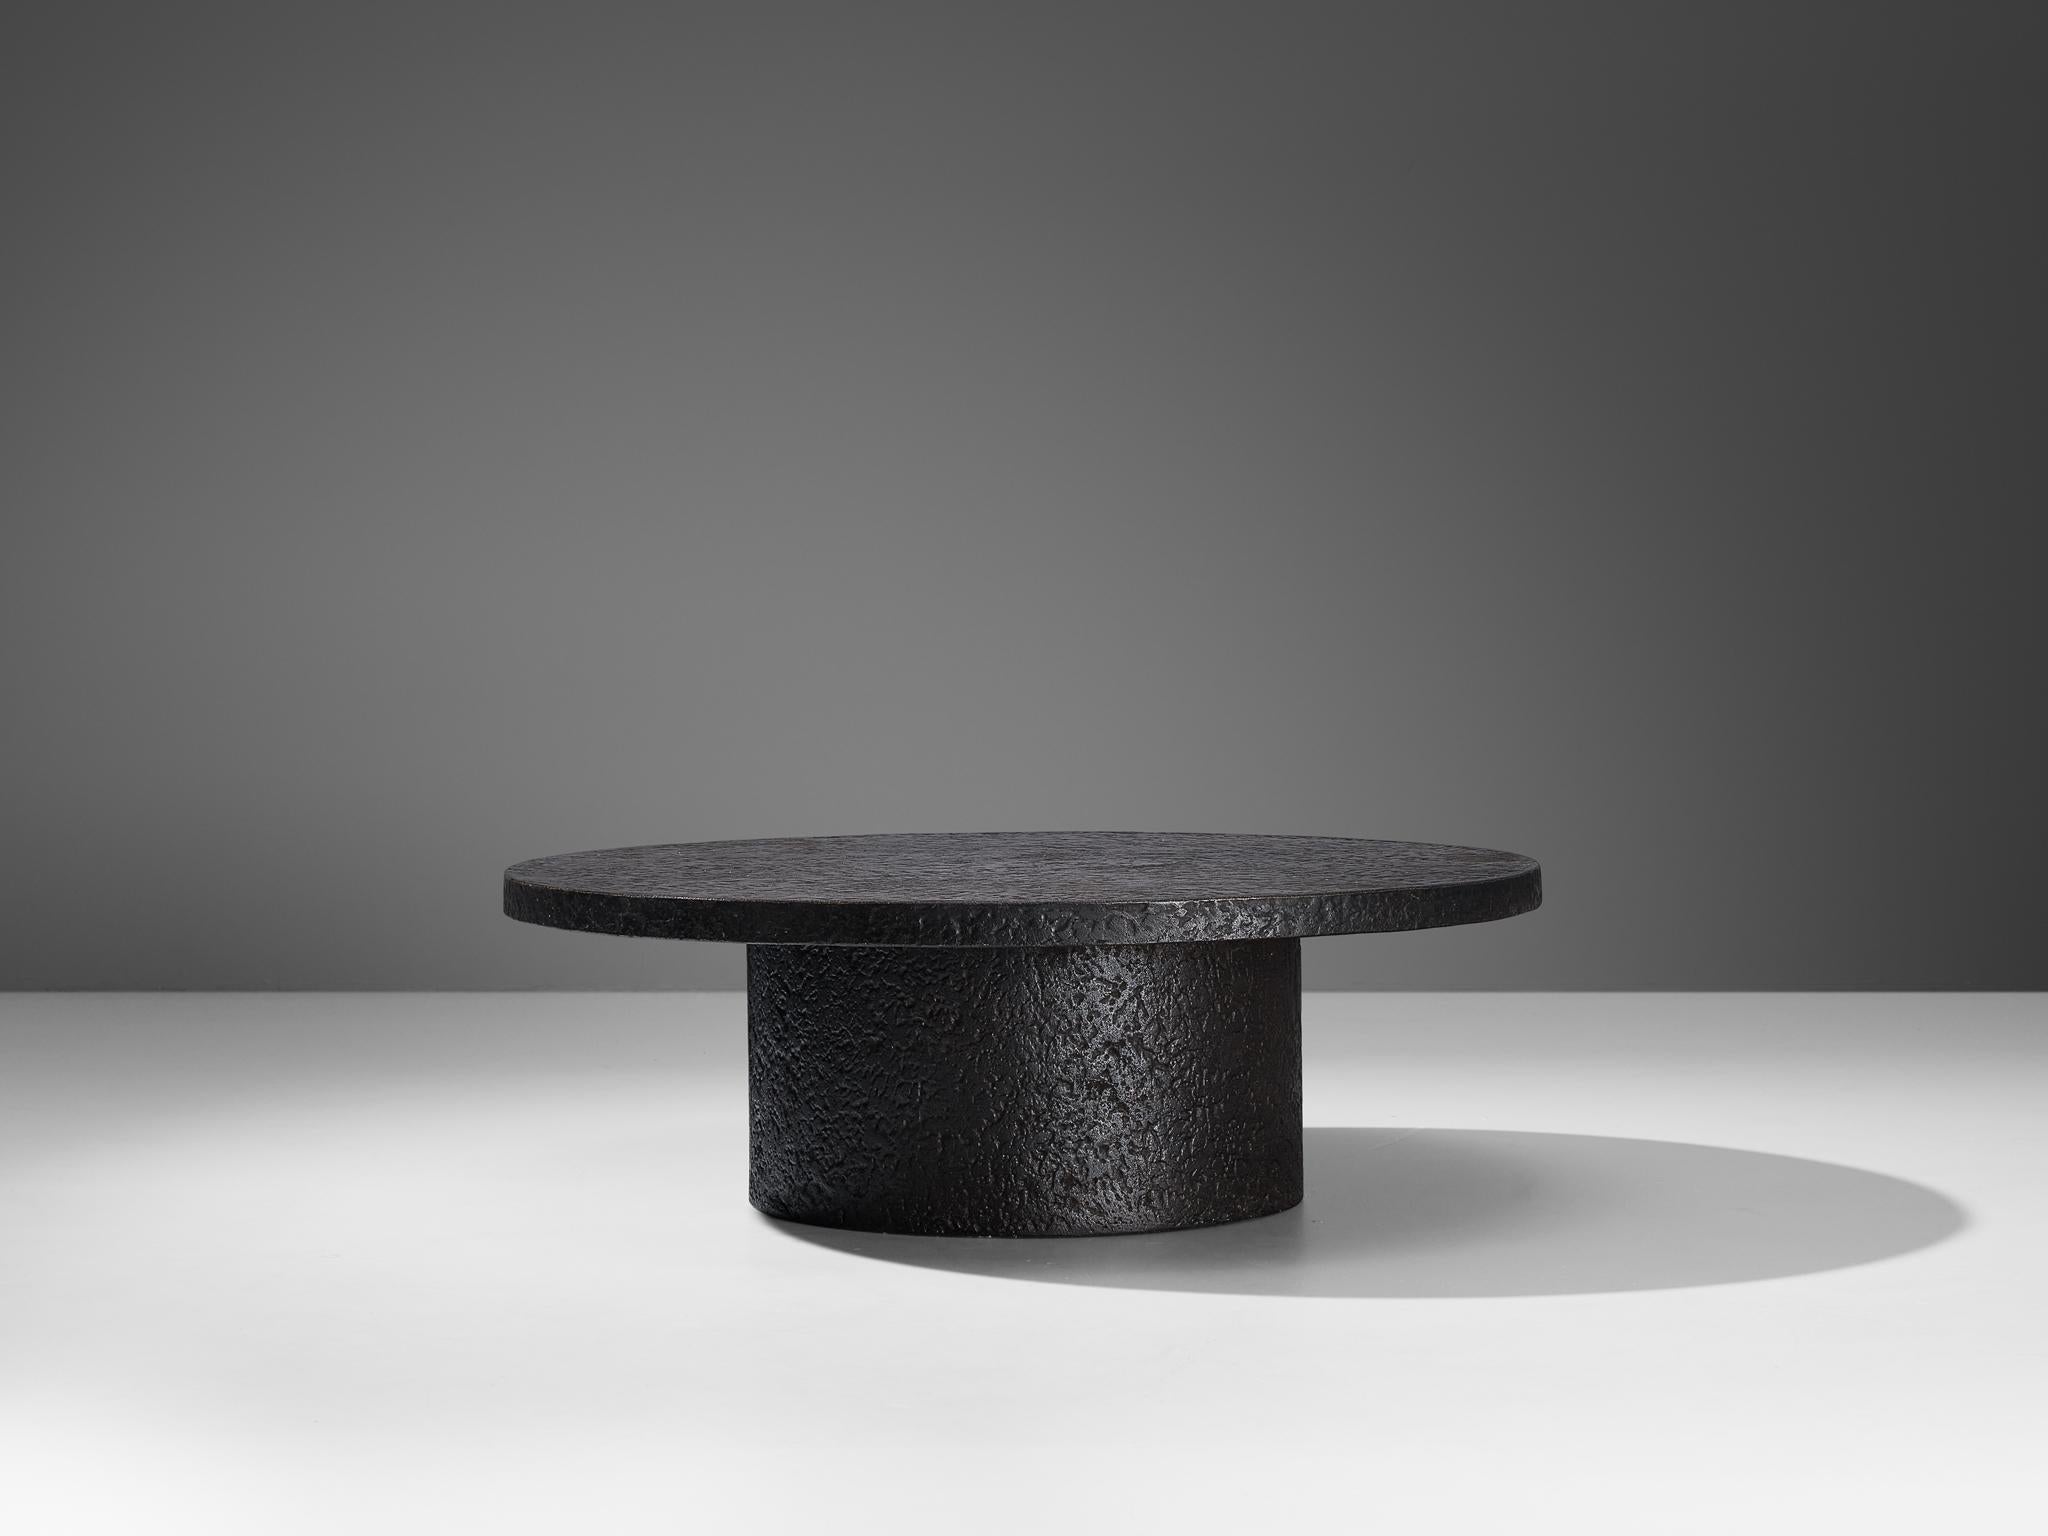 European Brutalist Round Coffee Table in Black Stone Look Resin